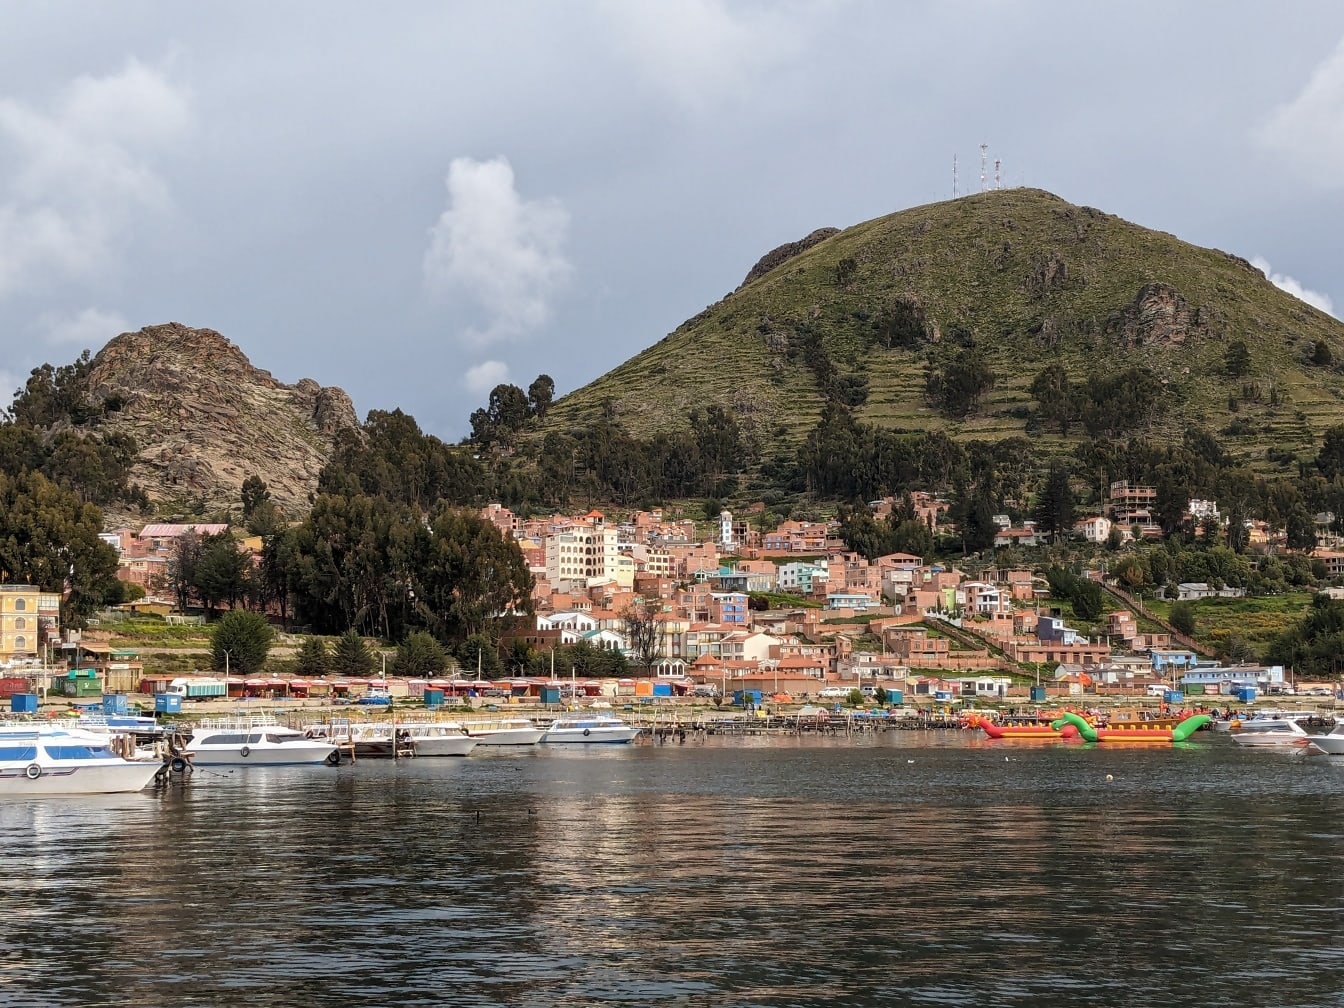 Panorama de la turística ciudad de Copacabana en el lago Titicaca en Bolivia